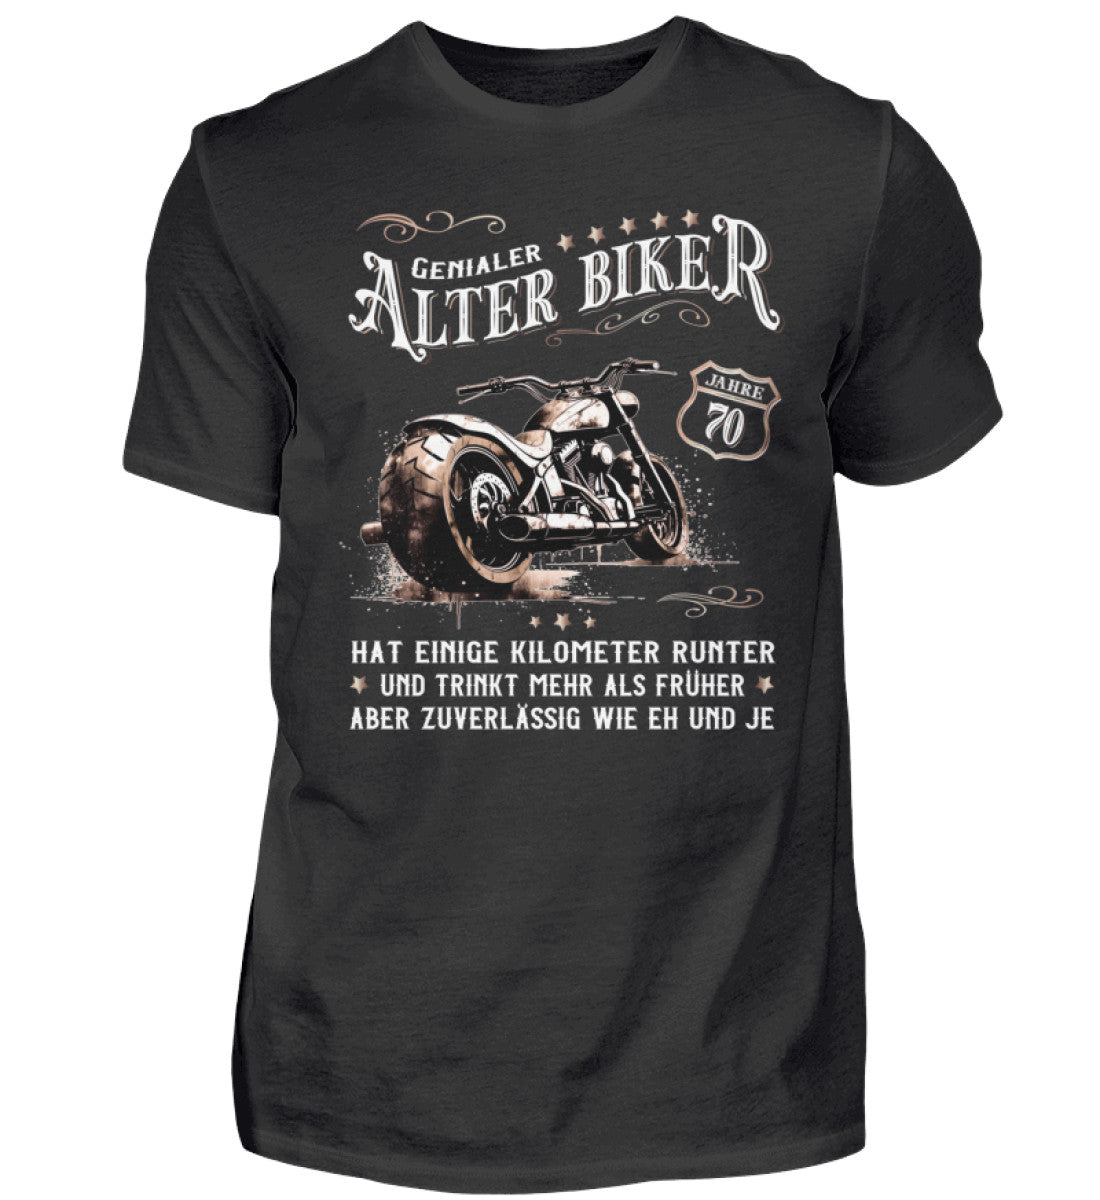 Ein Biker T-Shirt zum Geburtstag für Motorradfahrer von Wingbikers mit dem Aufdruck, Alter Biker - 70 Jahre - Einige Kilometer runter, trinkt mehr - aber zuverlässig wie eh und je - in schwarz.